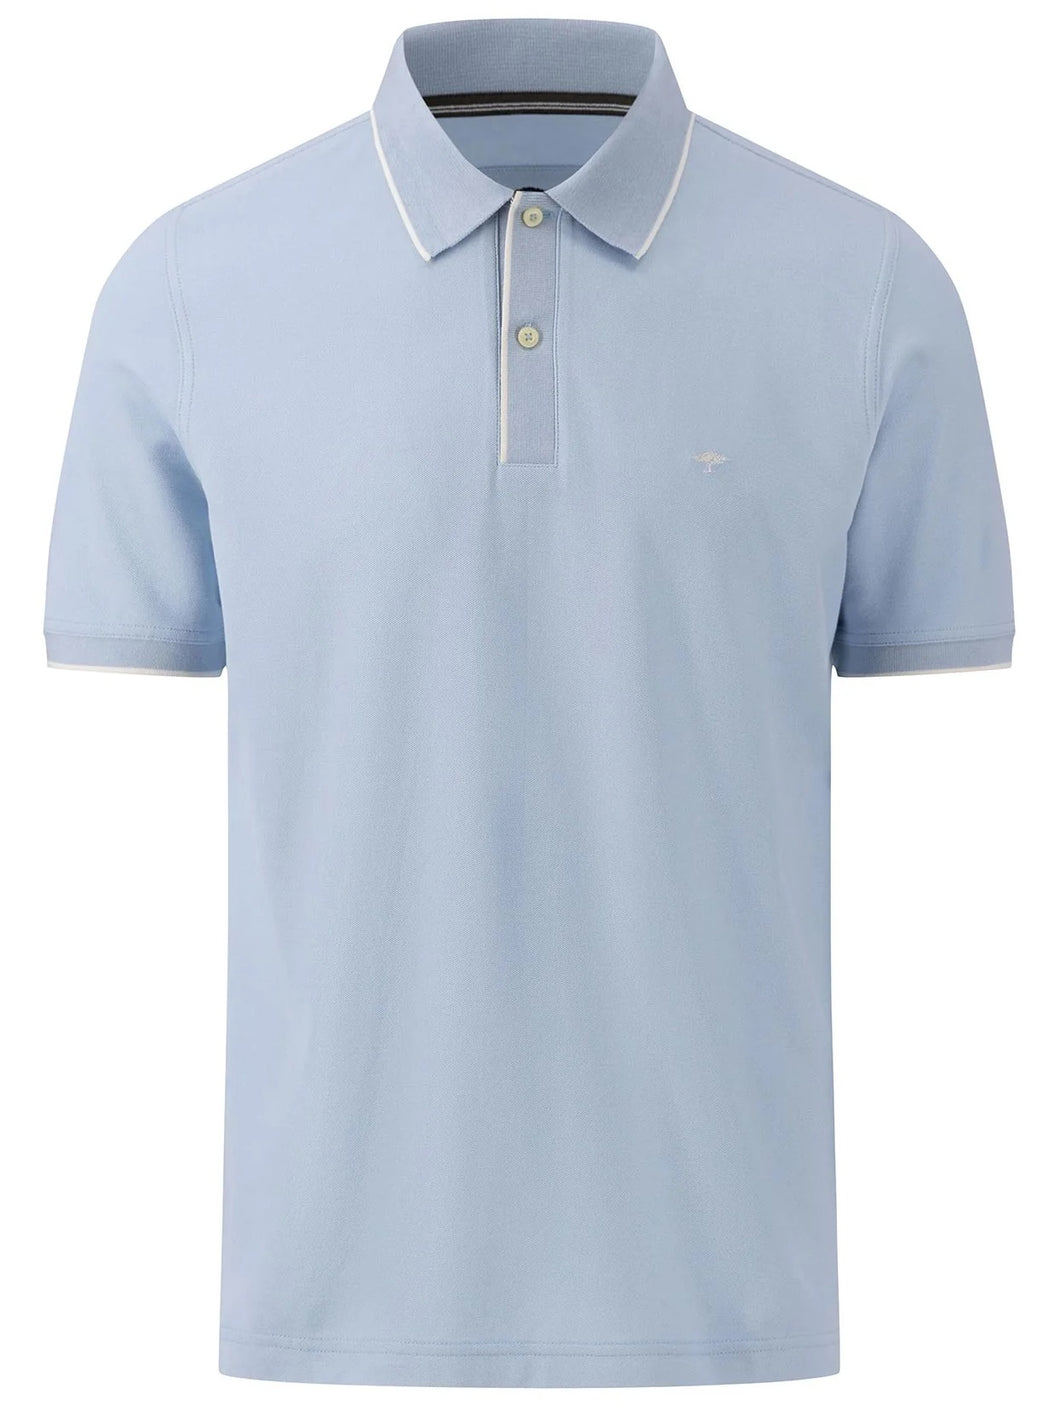 20% OFF - FYNCH HATTON Modern-Fit Polo Shirt - Men's Cotton Pique – Summer Breeze - Size: XL